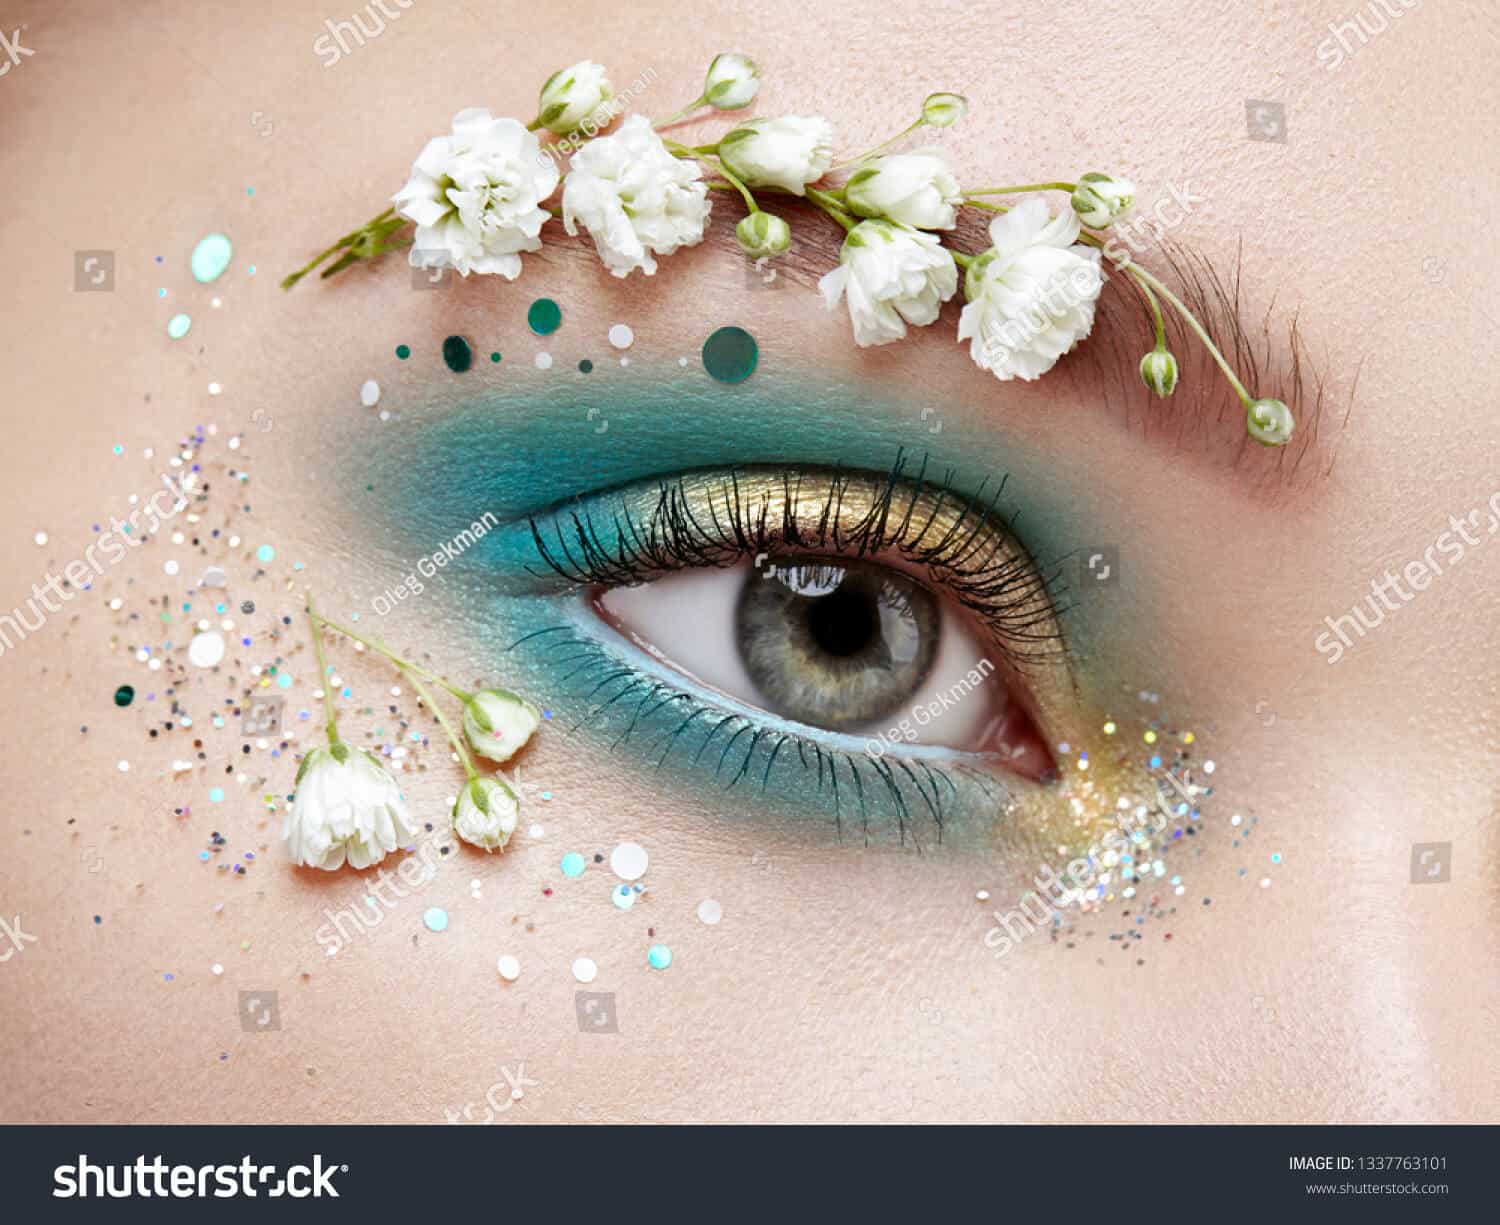 170 ngàn hình ảnh phấn mắt đẹp cho thiết kế của bạn